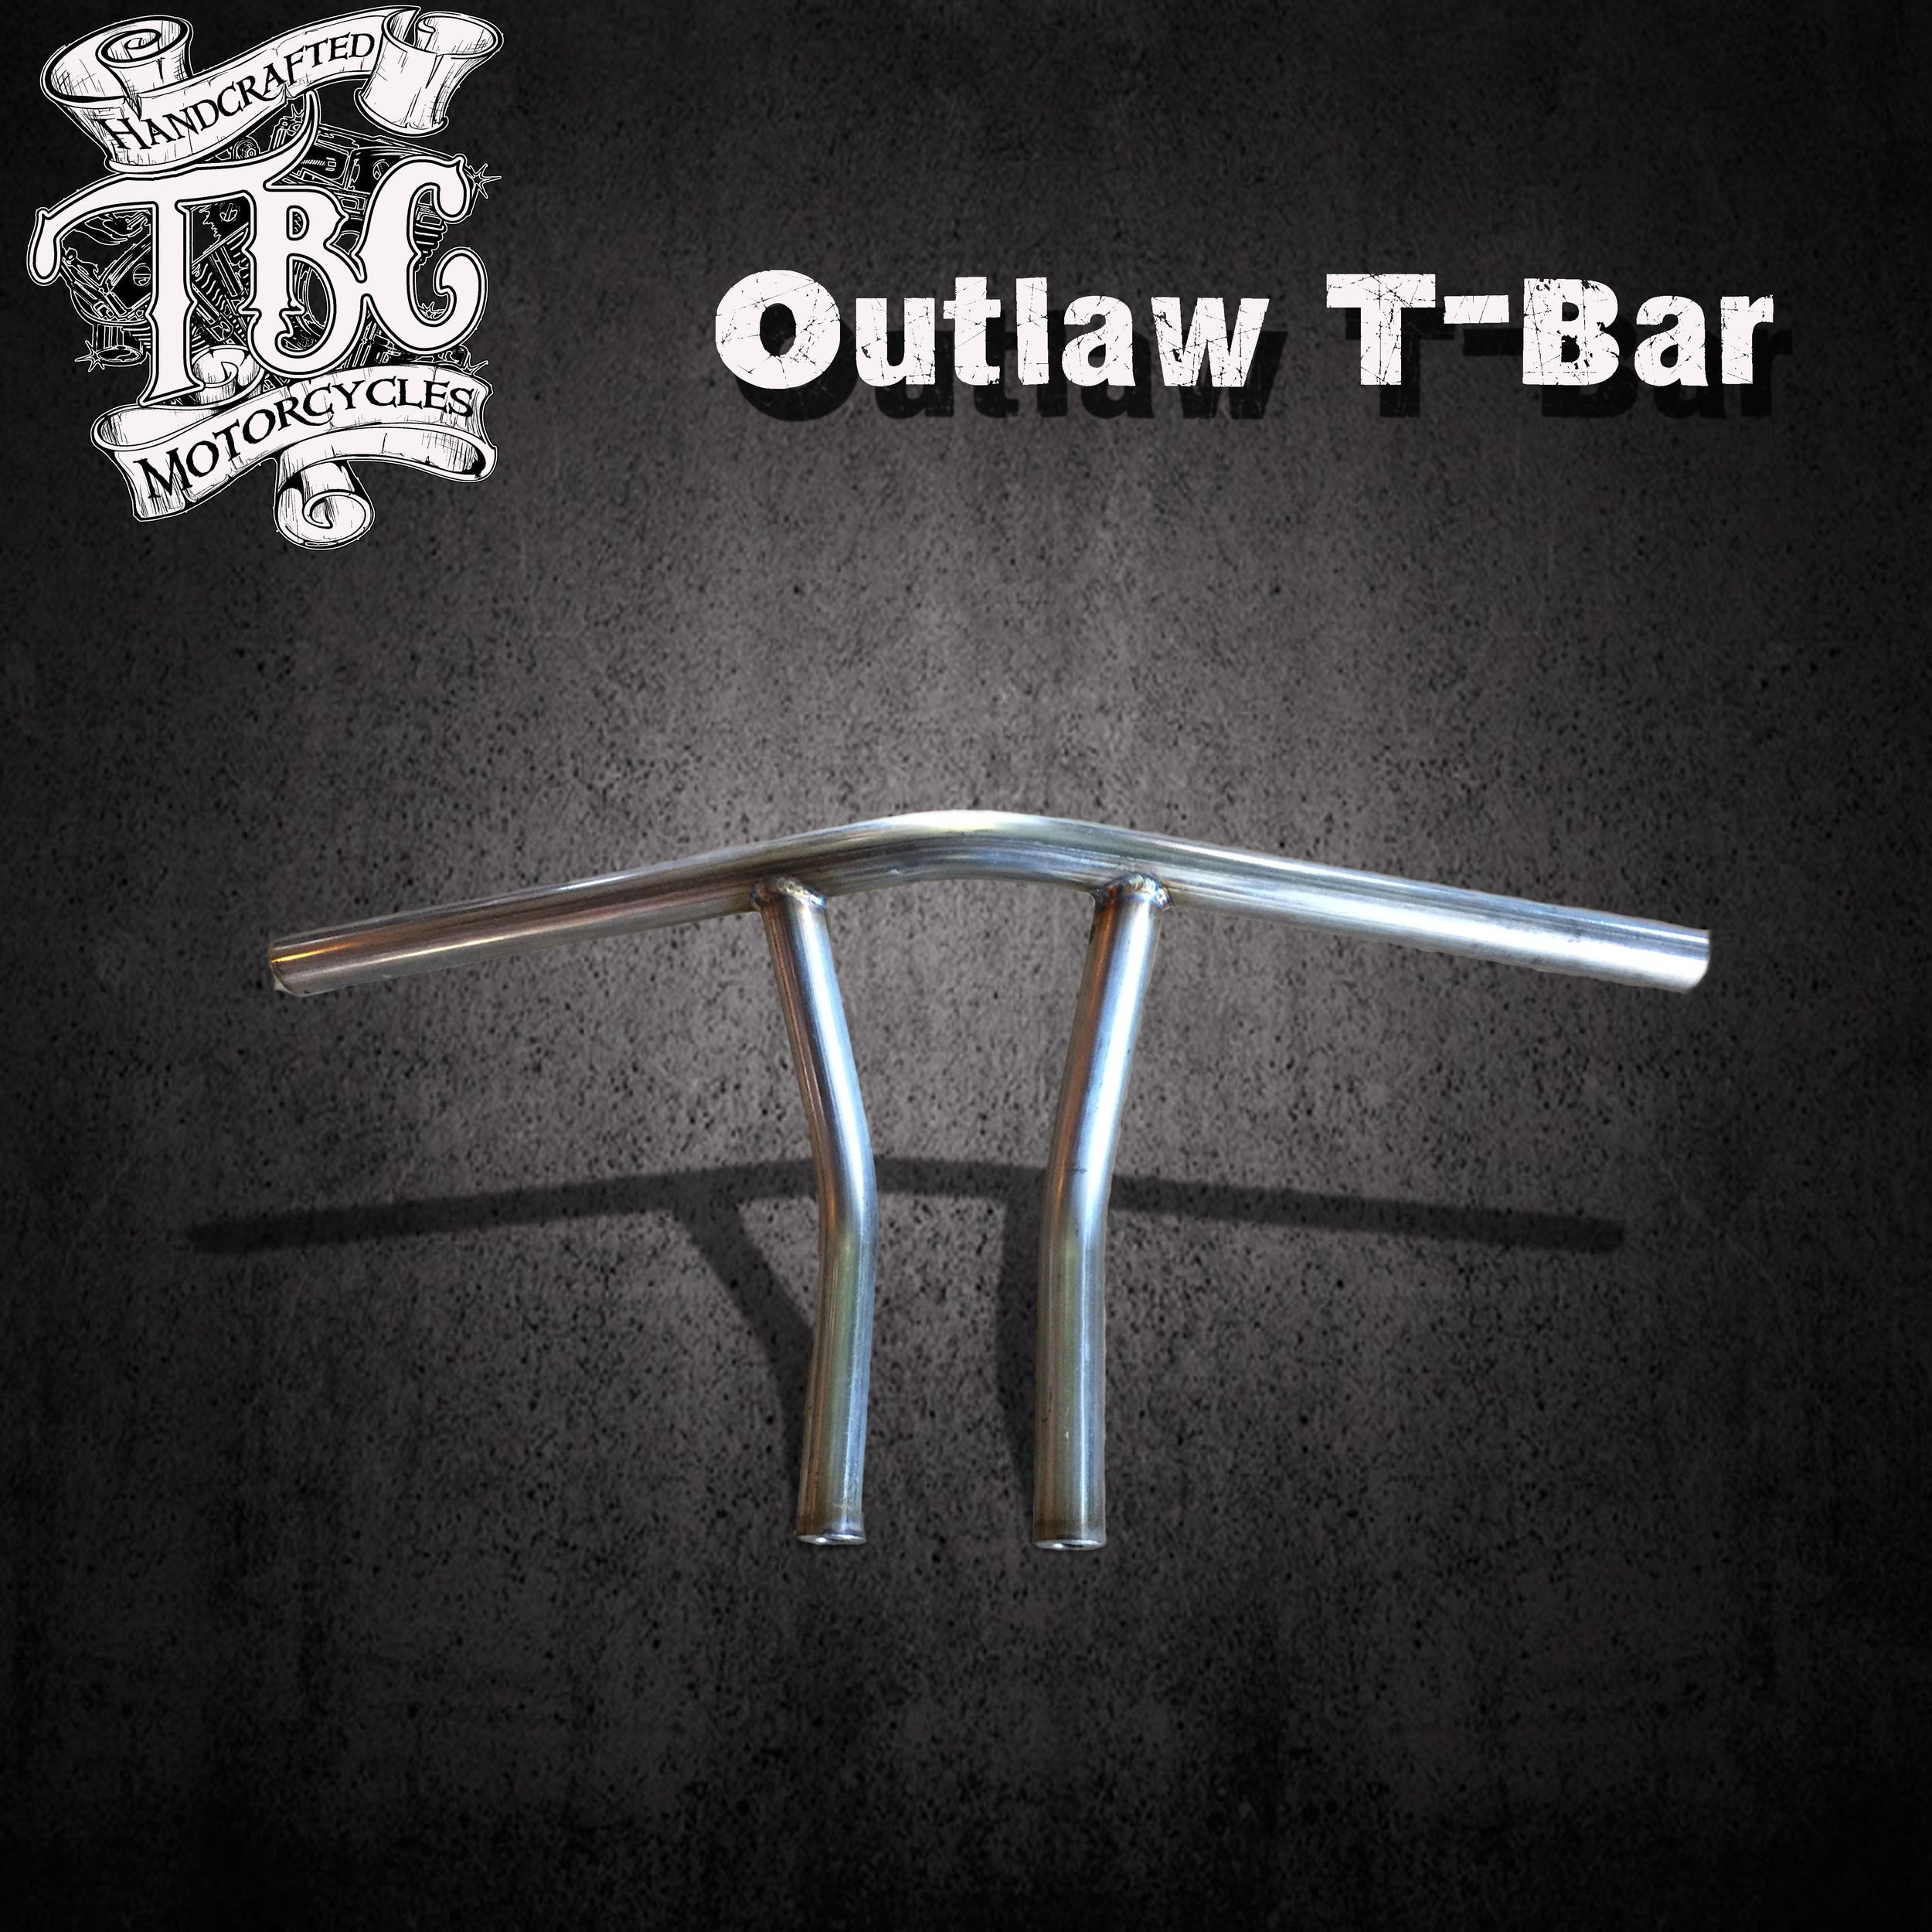 outlaw t-bars.jpg